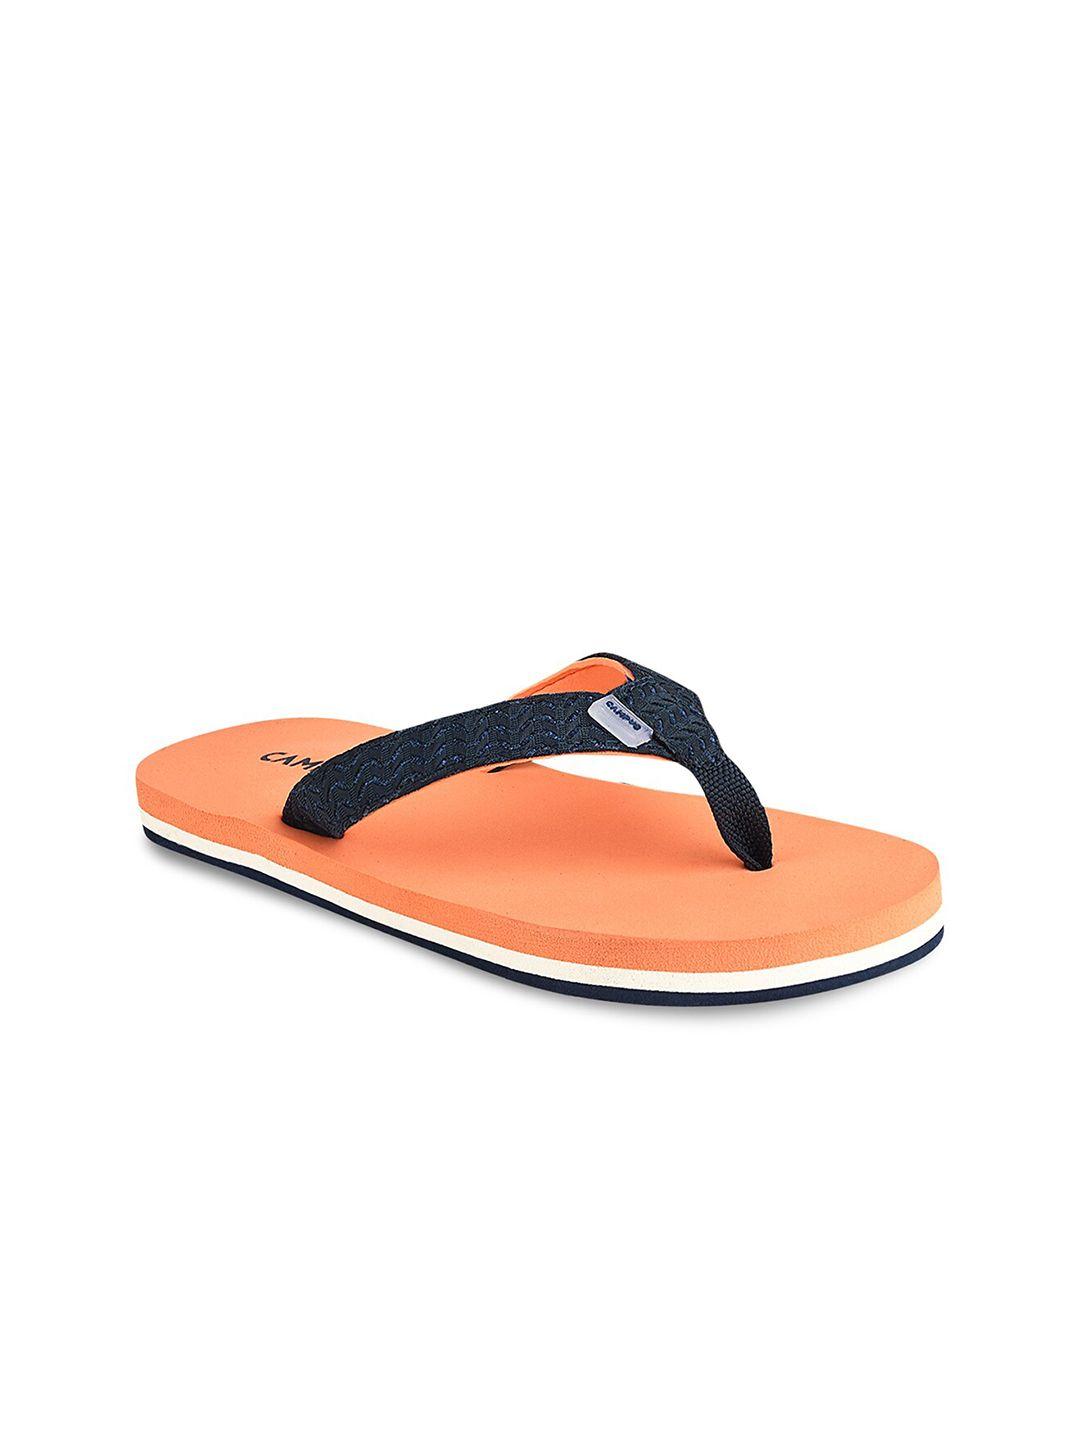 campus women orange & black thong flip-flops